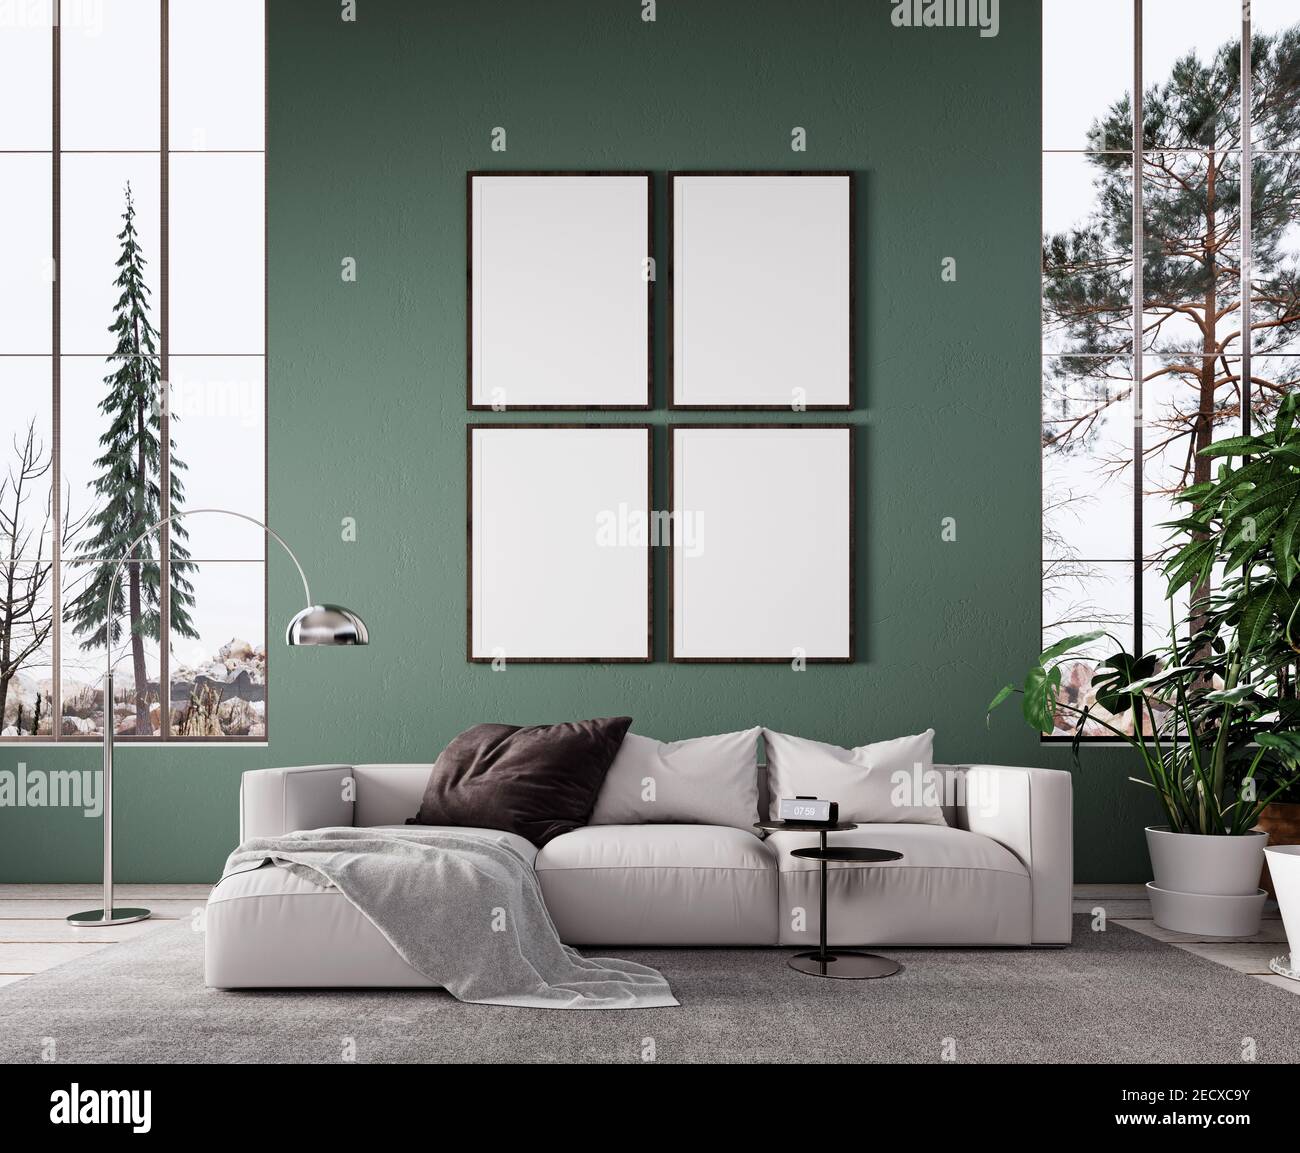 Interni dal design moderno con pareti verdi e vuoti Rendering 3D con cornice bianca Foto Stock